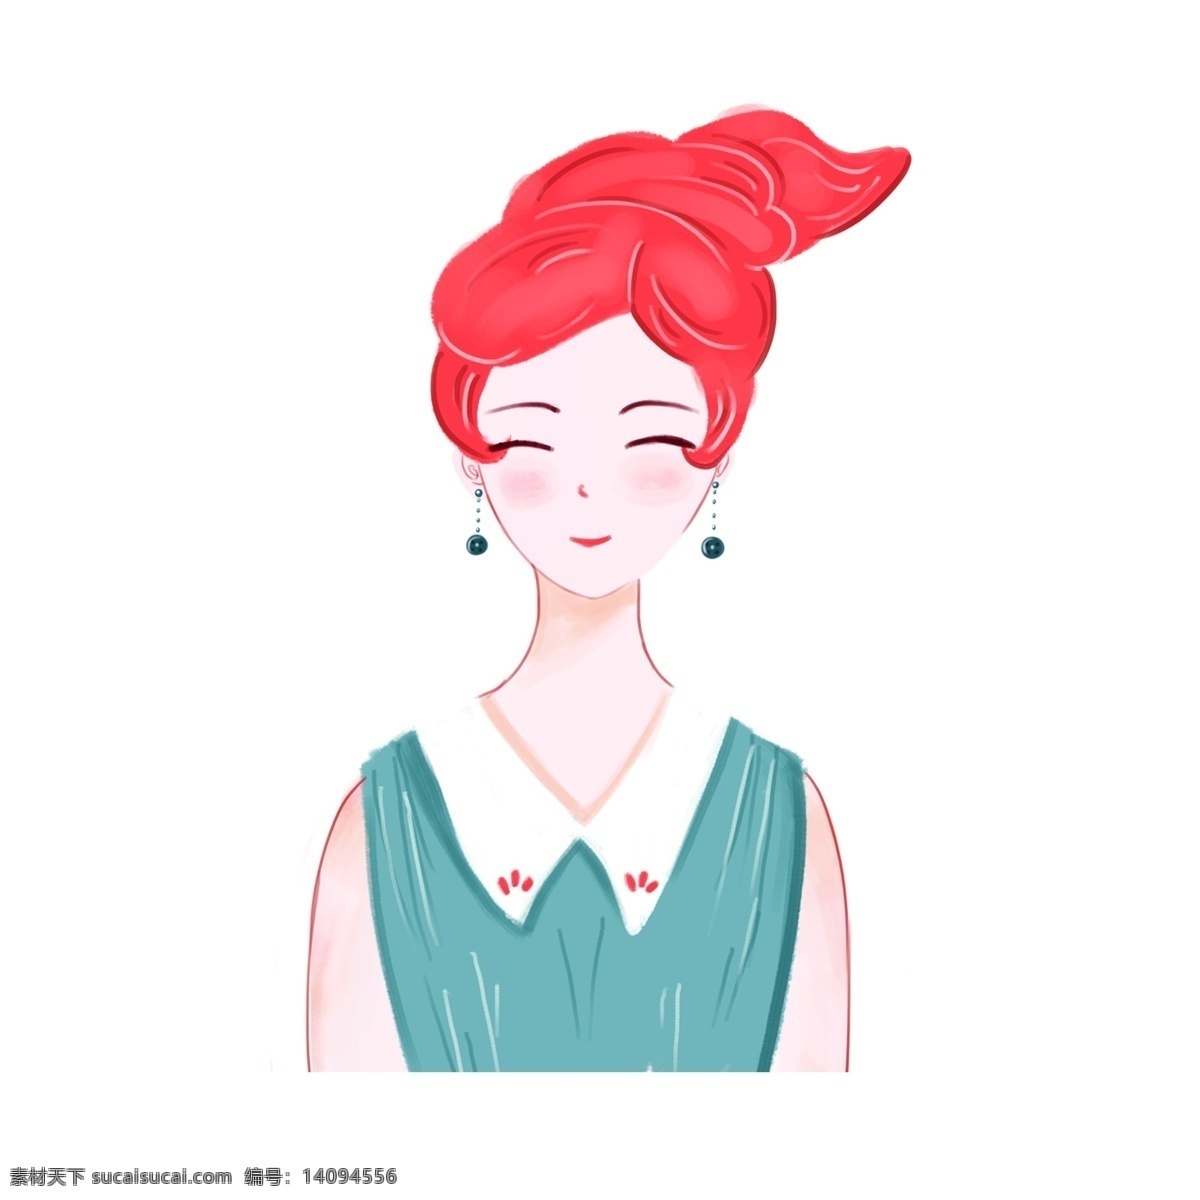 打扮 时尚 清新 女孩 卡通 元素 红发 裙装